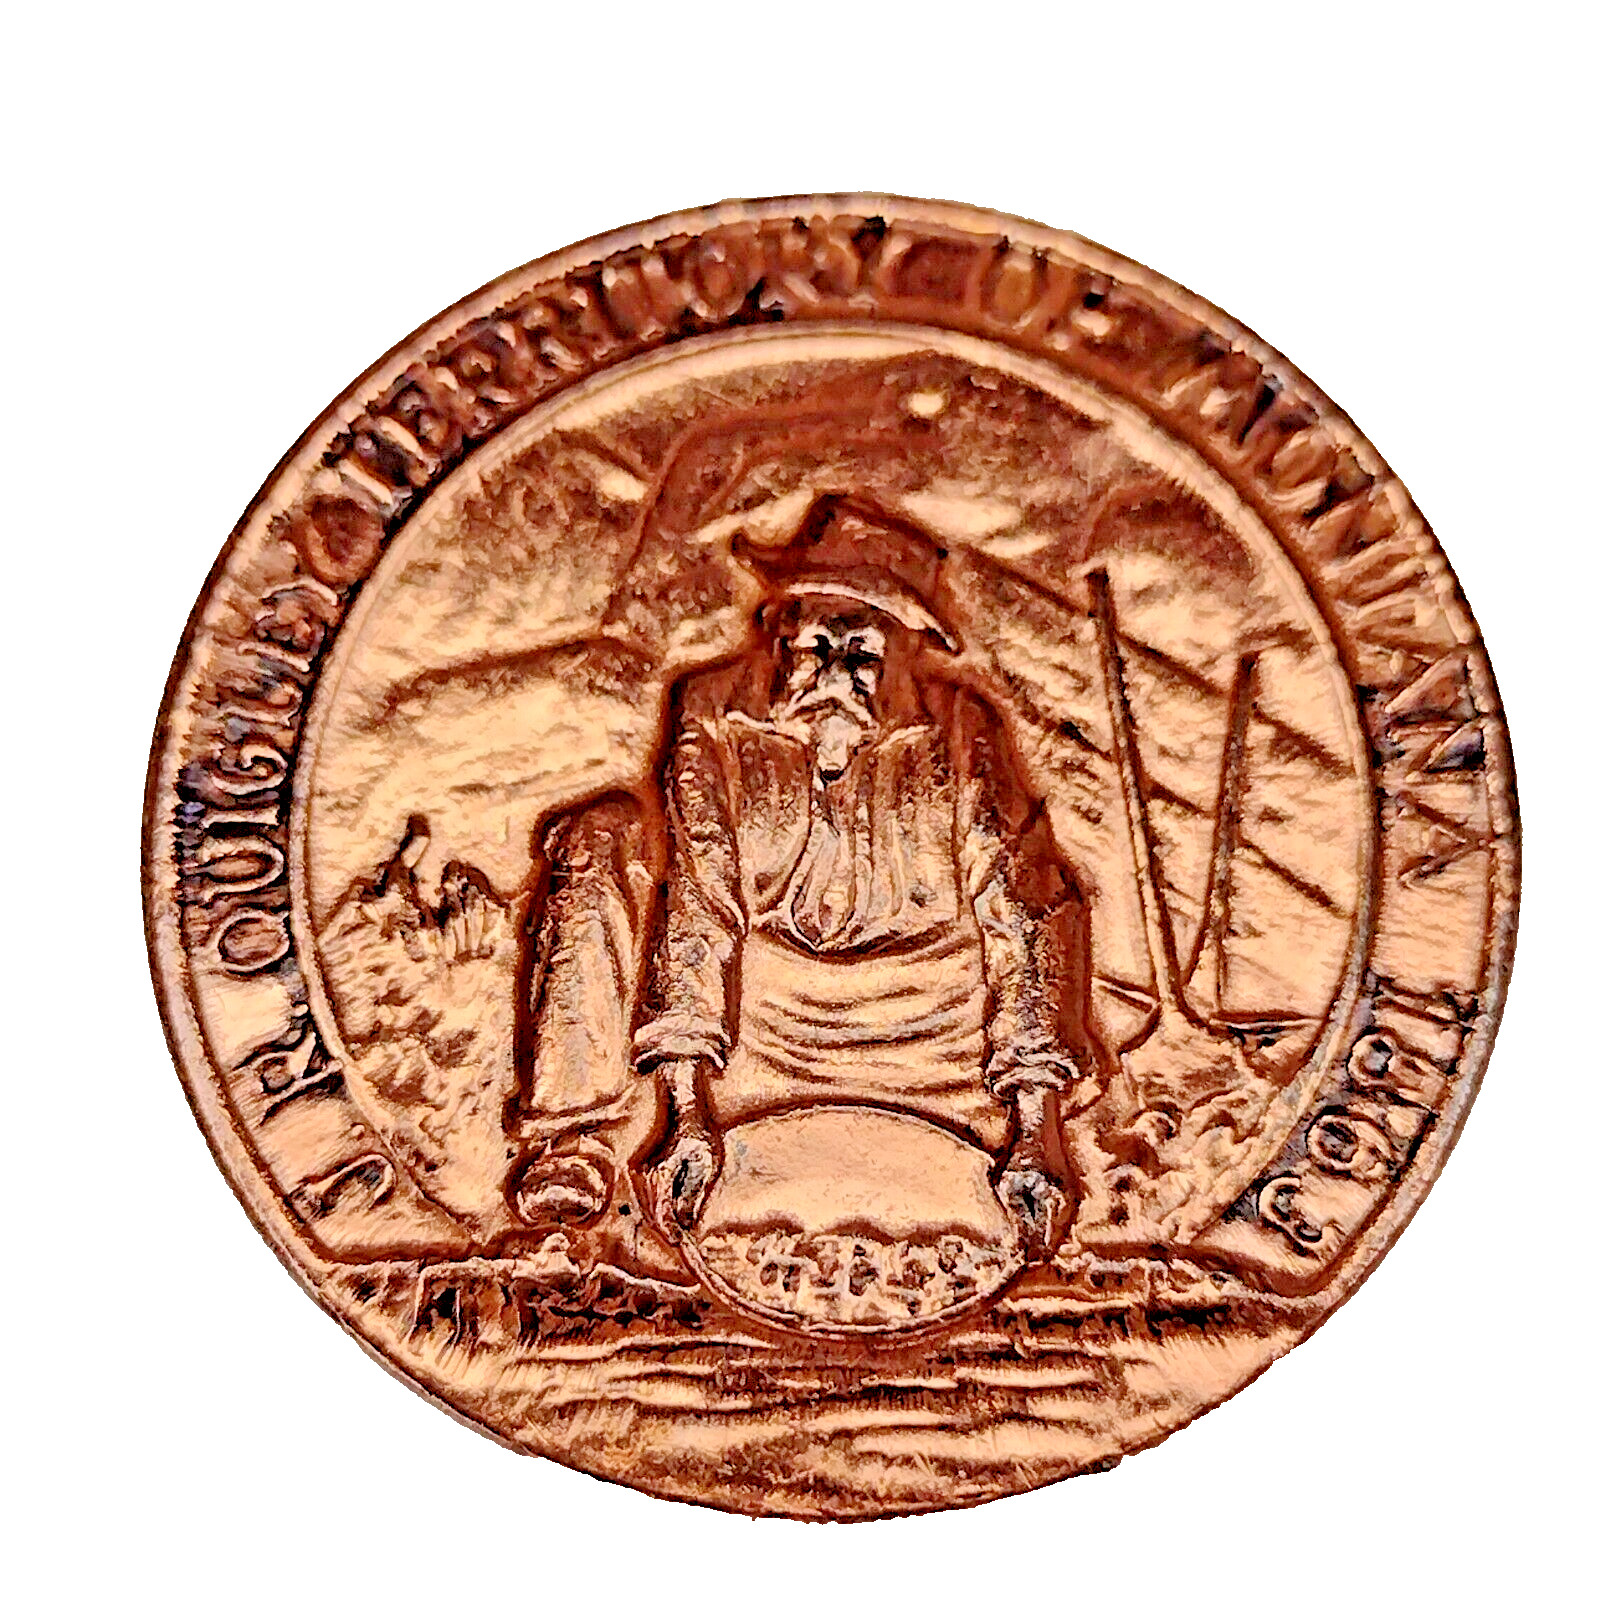 1968 Montana Territory Frontier Town Bronze 30mm Token- Medal in capsule Vintage